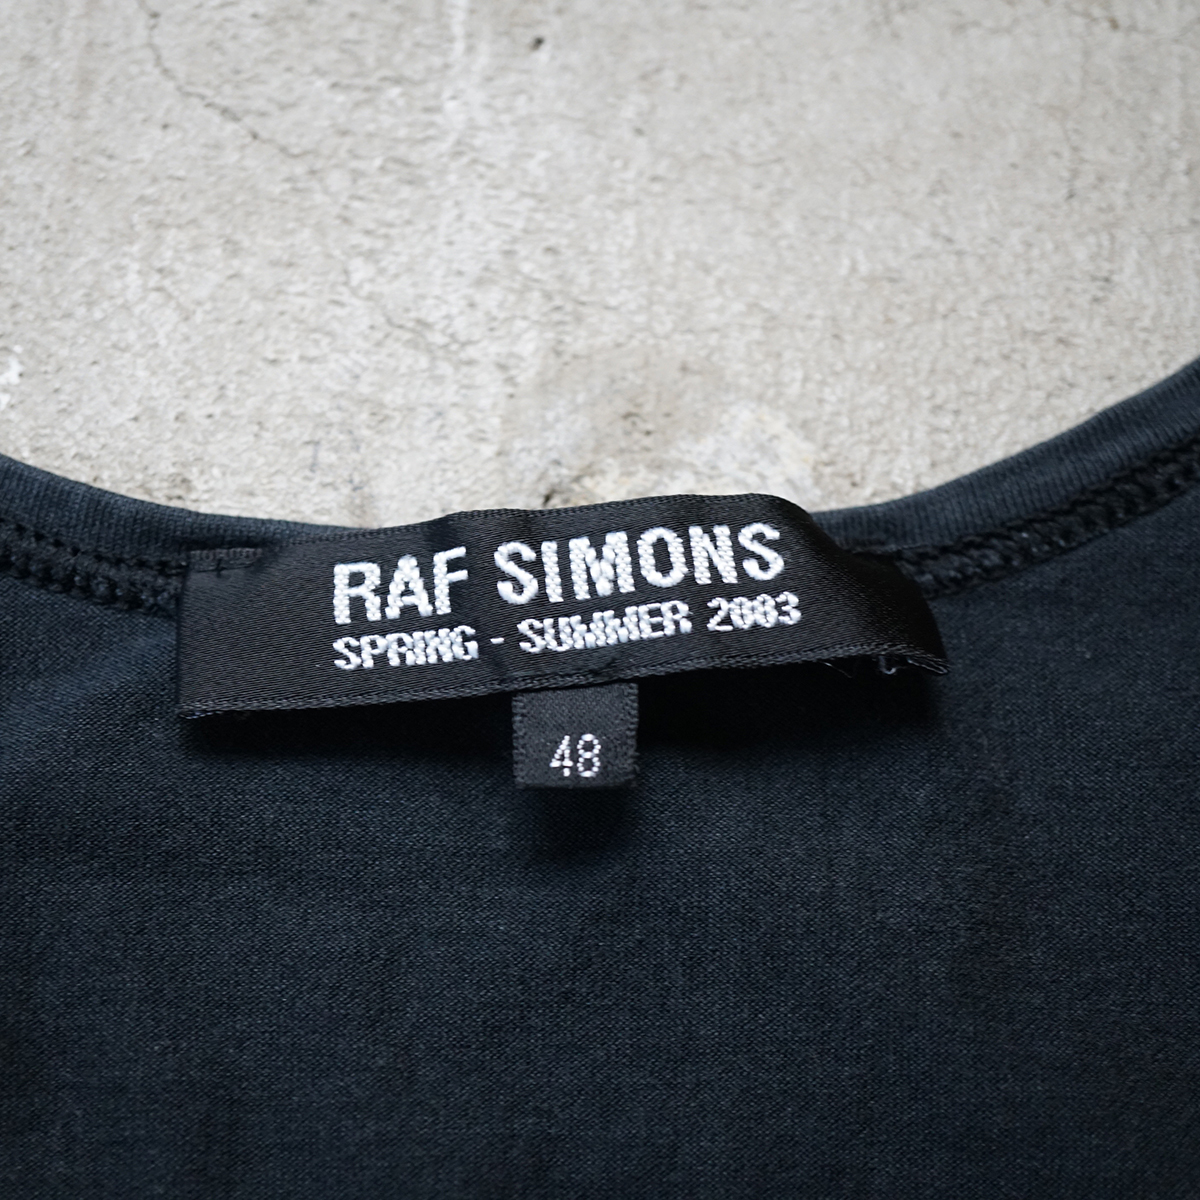 サイトにて】 RAF SIMONS - 2003 raf simons ラフシモンズ 消費者期 